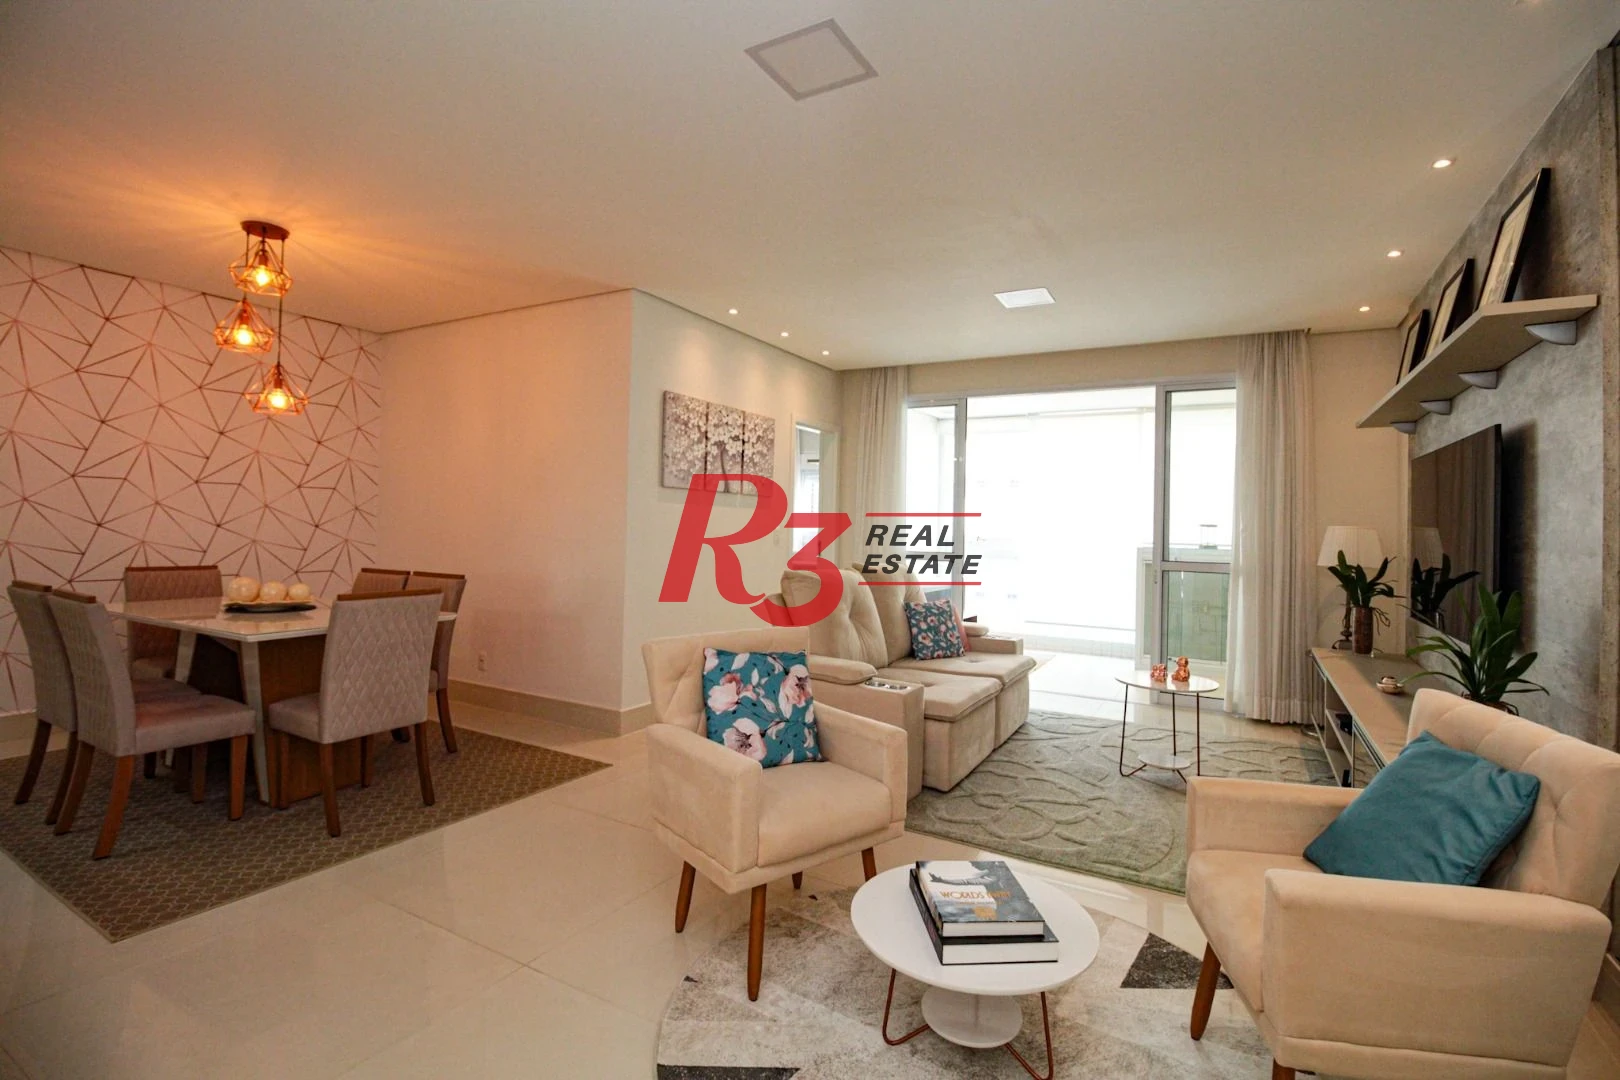 Apartamento com 1 dormitório para alugar, 95 m² por R$ 8.500,00/mês - Aparecida - Santos/SP